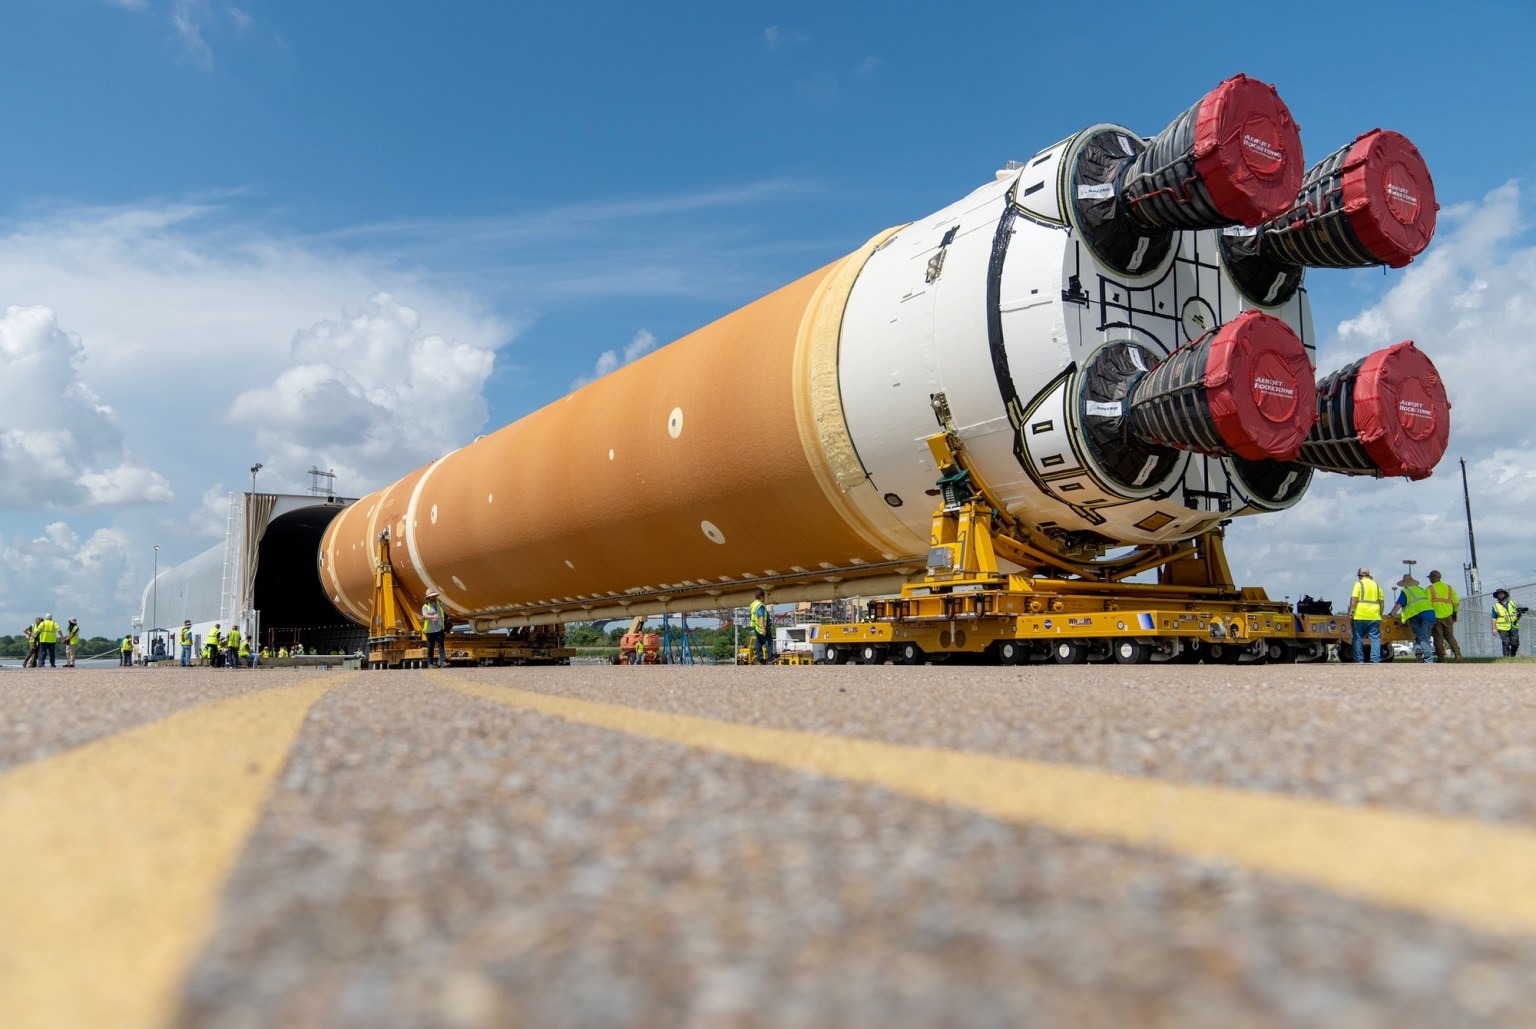 NASA’s SLS rocket starts 1440 km journey: Photo